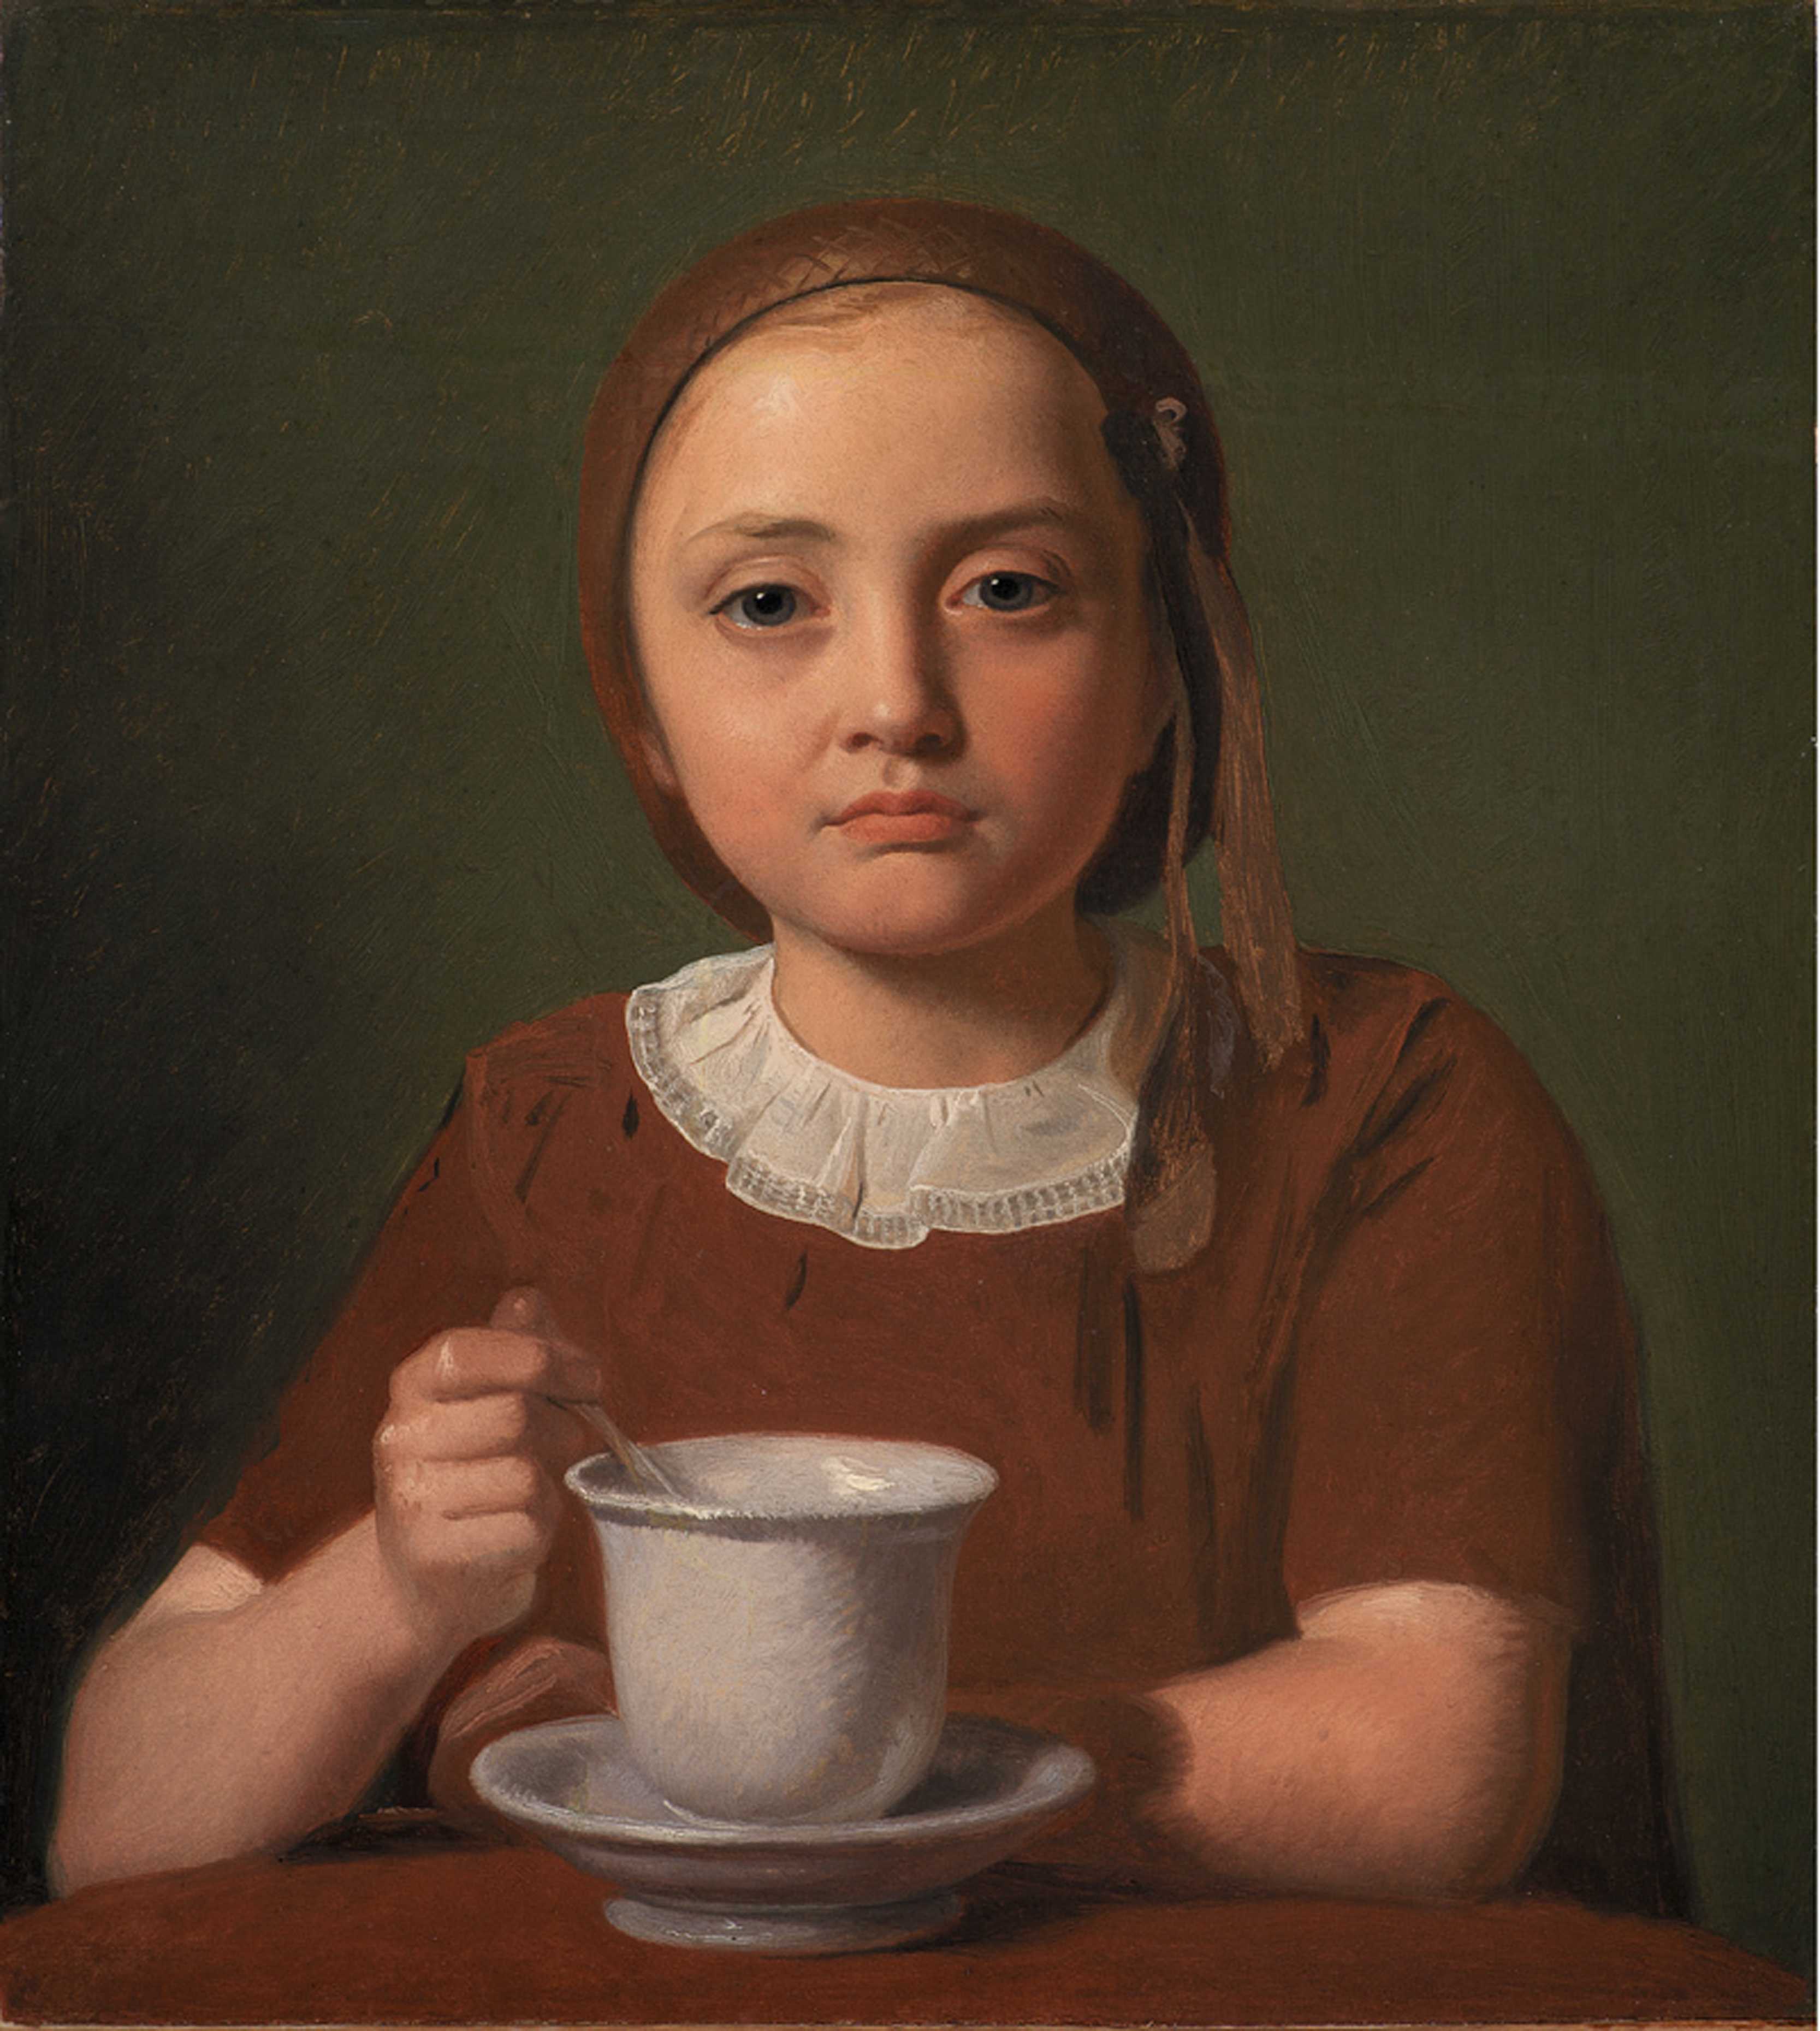 Constantin Hansen, Petite fille, Elise Købke, avec une tasse, 1850. Huile sur toile. 39x35,5 cm, Copenhague, Statens Museum for Kunst